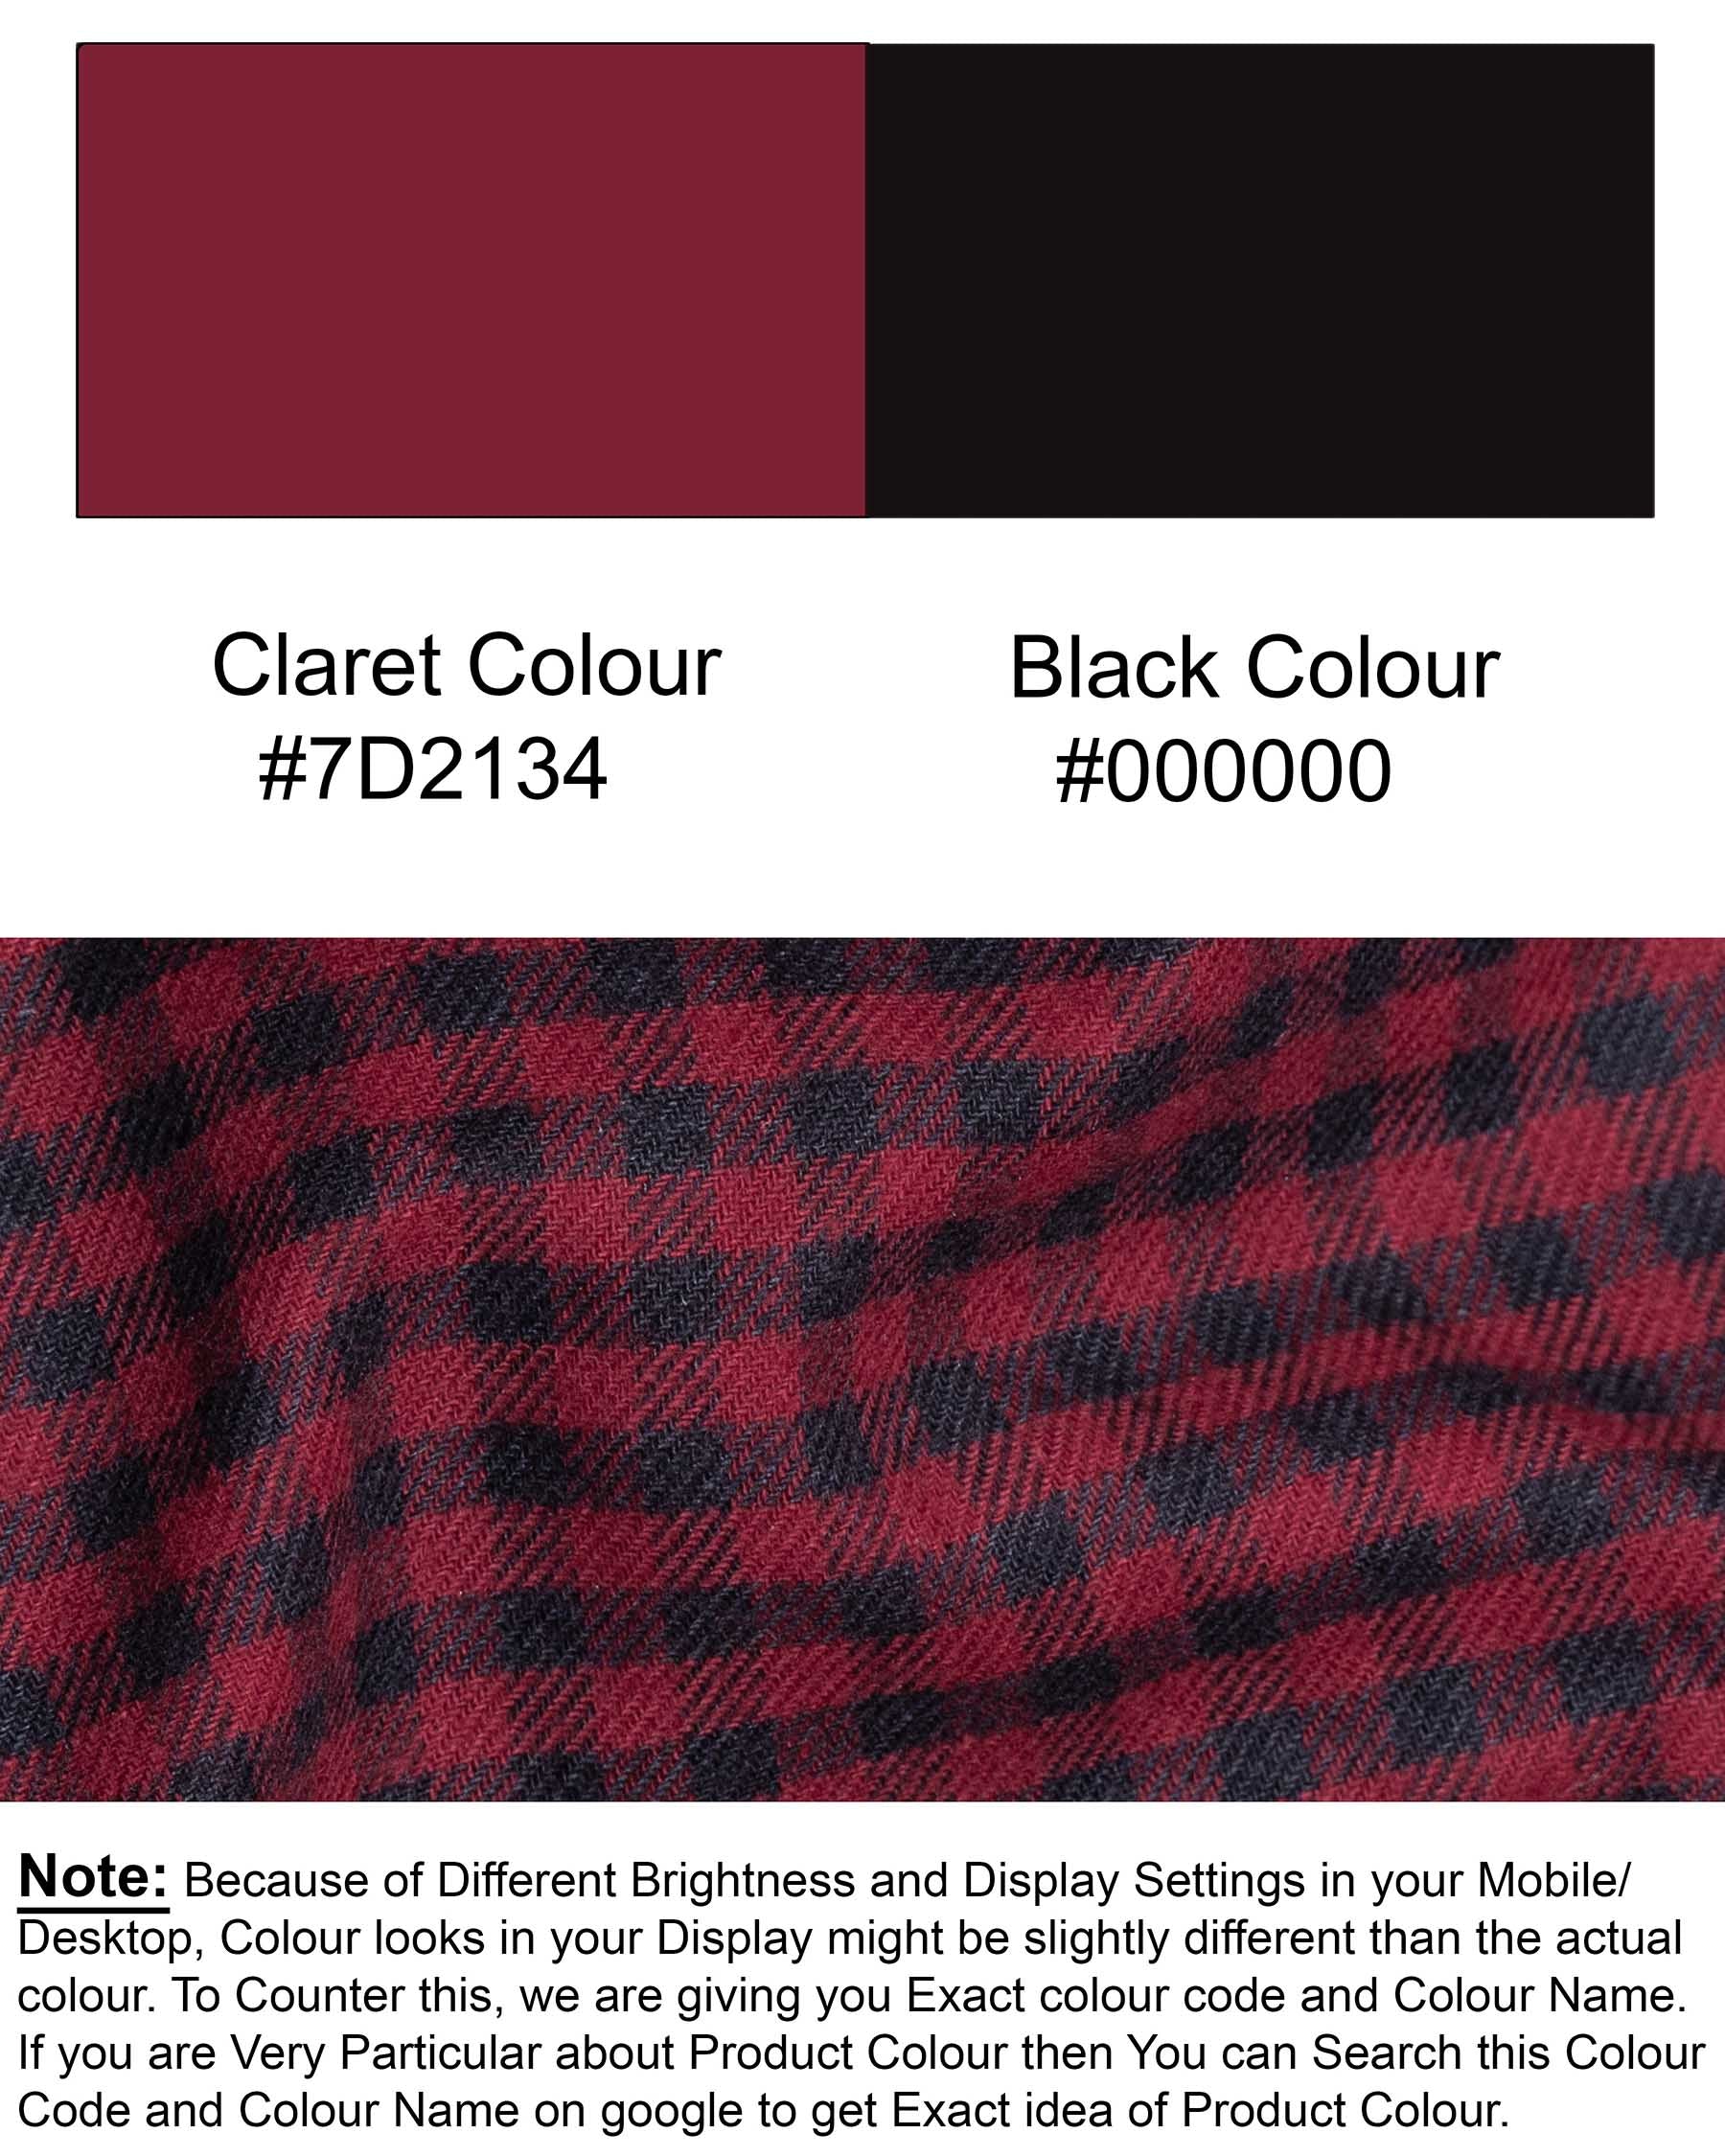 Claret Red Checkered Premium Cotton Flannel Shirt 6049-BD-BLK-38, 6049-BD-BLK-H-38, 6049-BD-BLK-39, 6049-BD-BLK-H-39, 6049-BD-BLK-40, 6049-BD-BLK-H-40, 6049-BD-BLK-42, 6049-BD-BLK-H-42, 6049-BD-BLK-44, 6049-BD-BLK-H-44, 6049-BD-BLK-46, 6049-BD-BLK-H-46, 6049-BD-BLK-48, 6049-BD-BLK-H-48, 6049-BD-BLK-50, 6049-BD-BLK-H-50, 6049-BD-BLK-52, 6049-BD-BLK-H-52